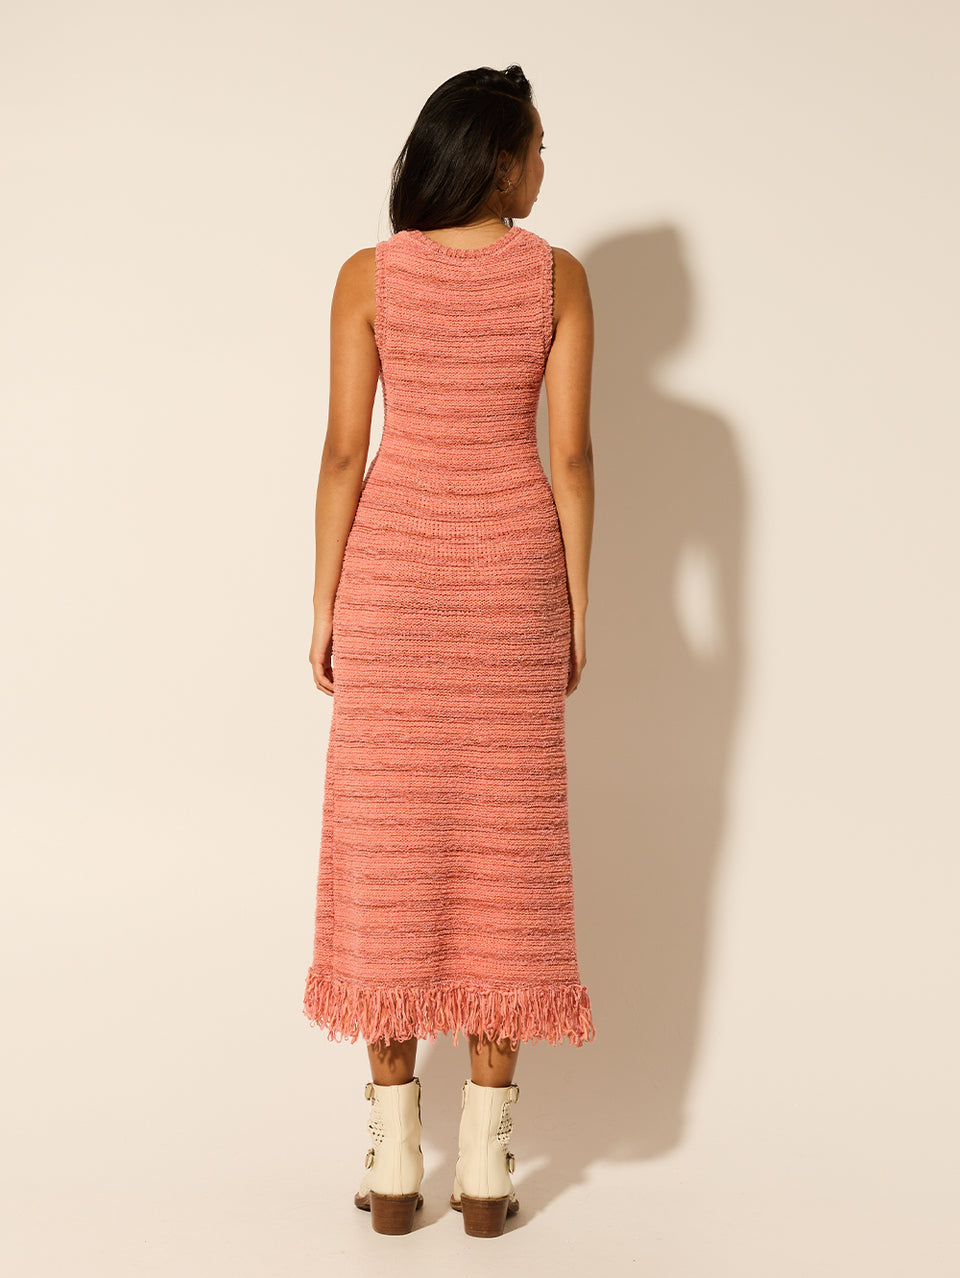 Luciana Knit Midi Dress Pink KIVARI | Model wears pink knit midi dress back view